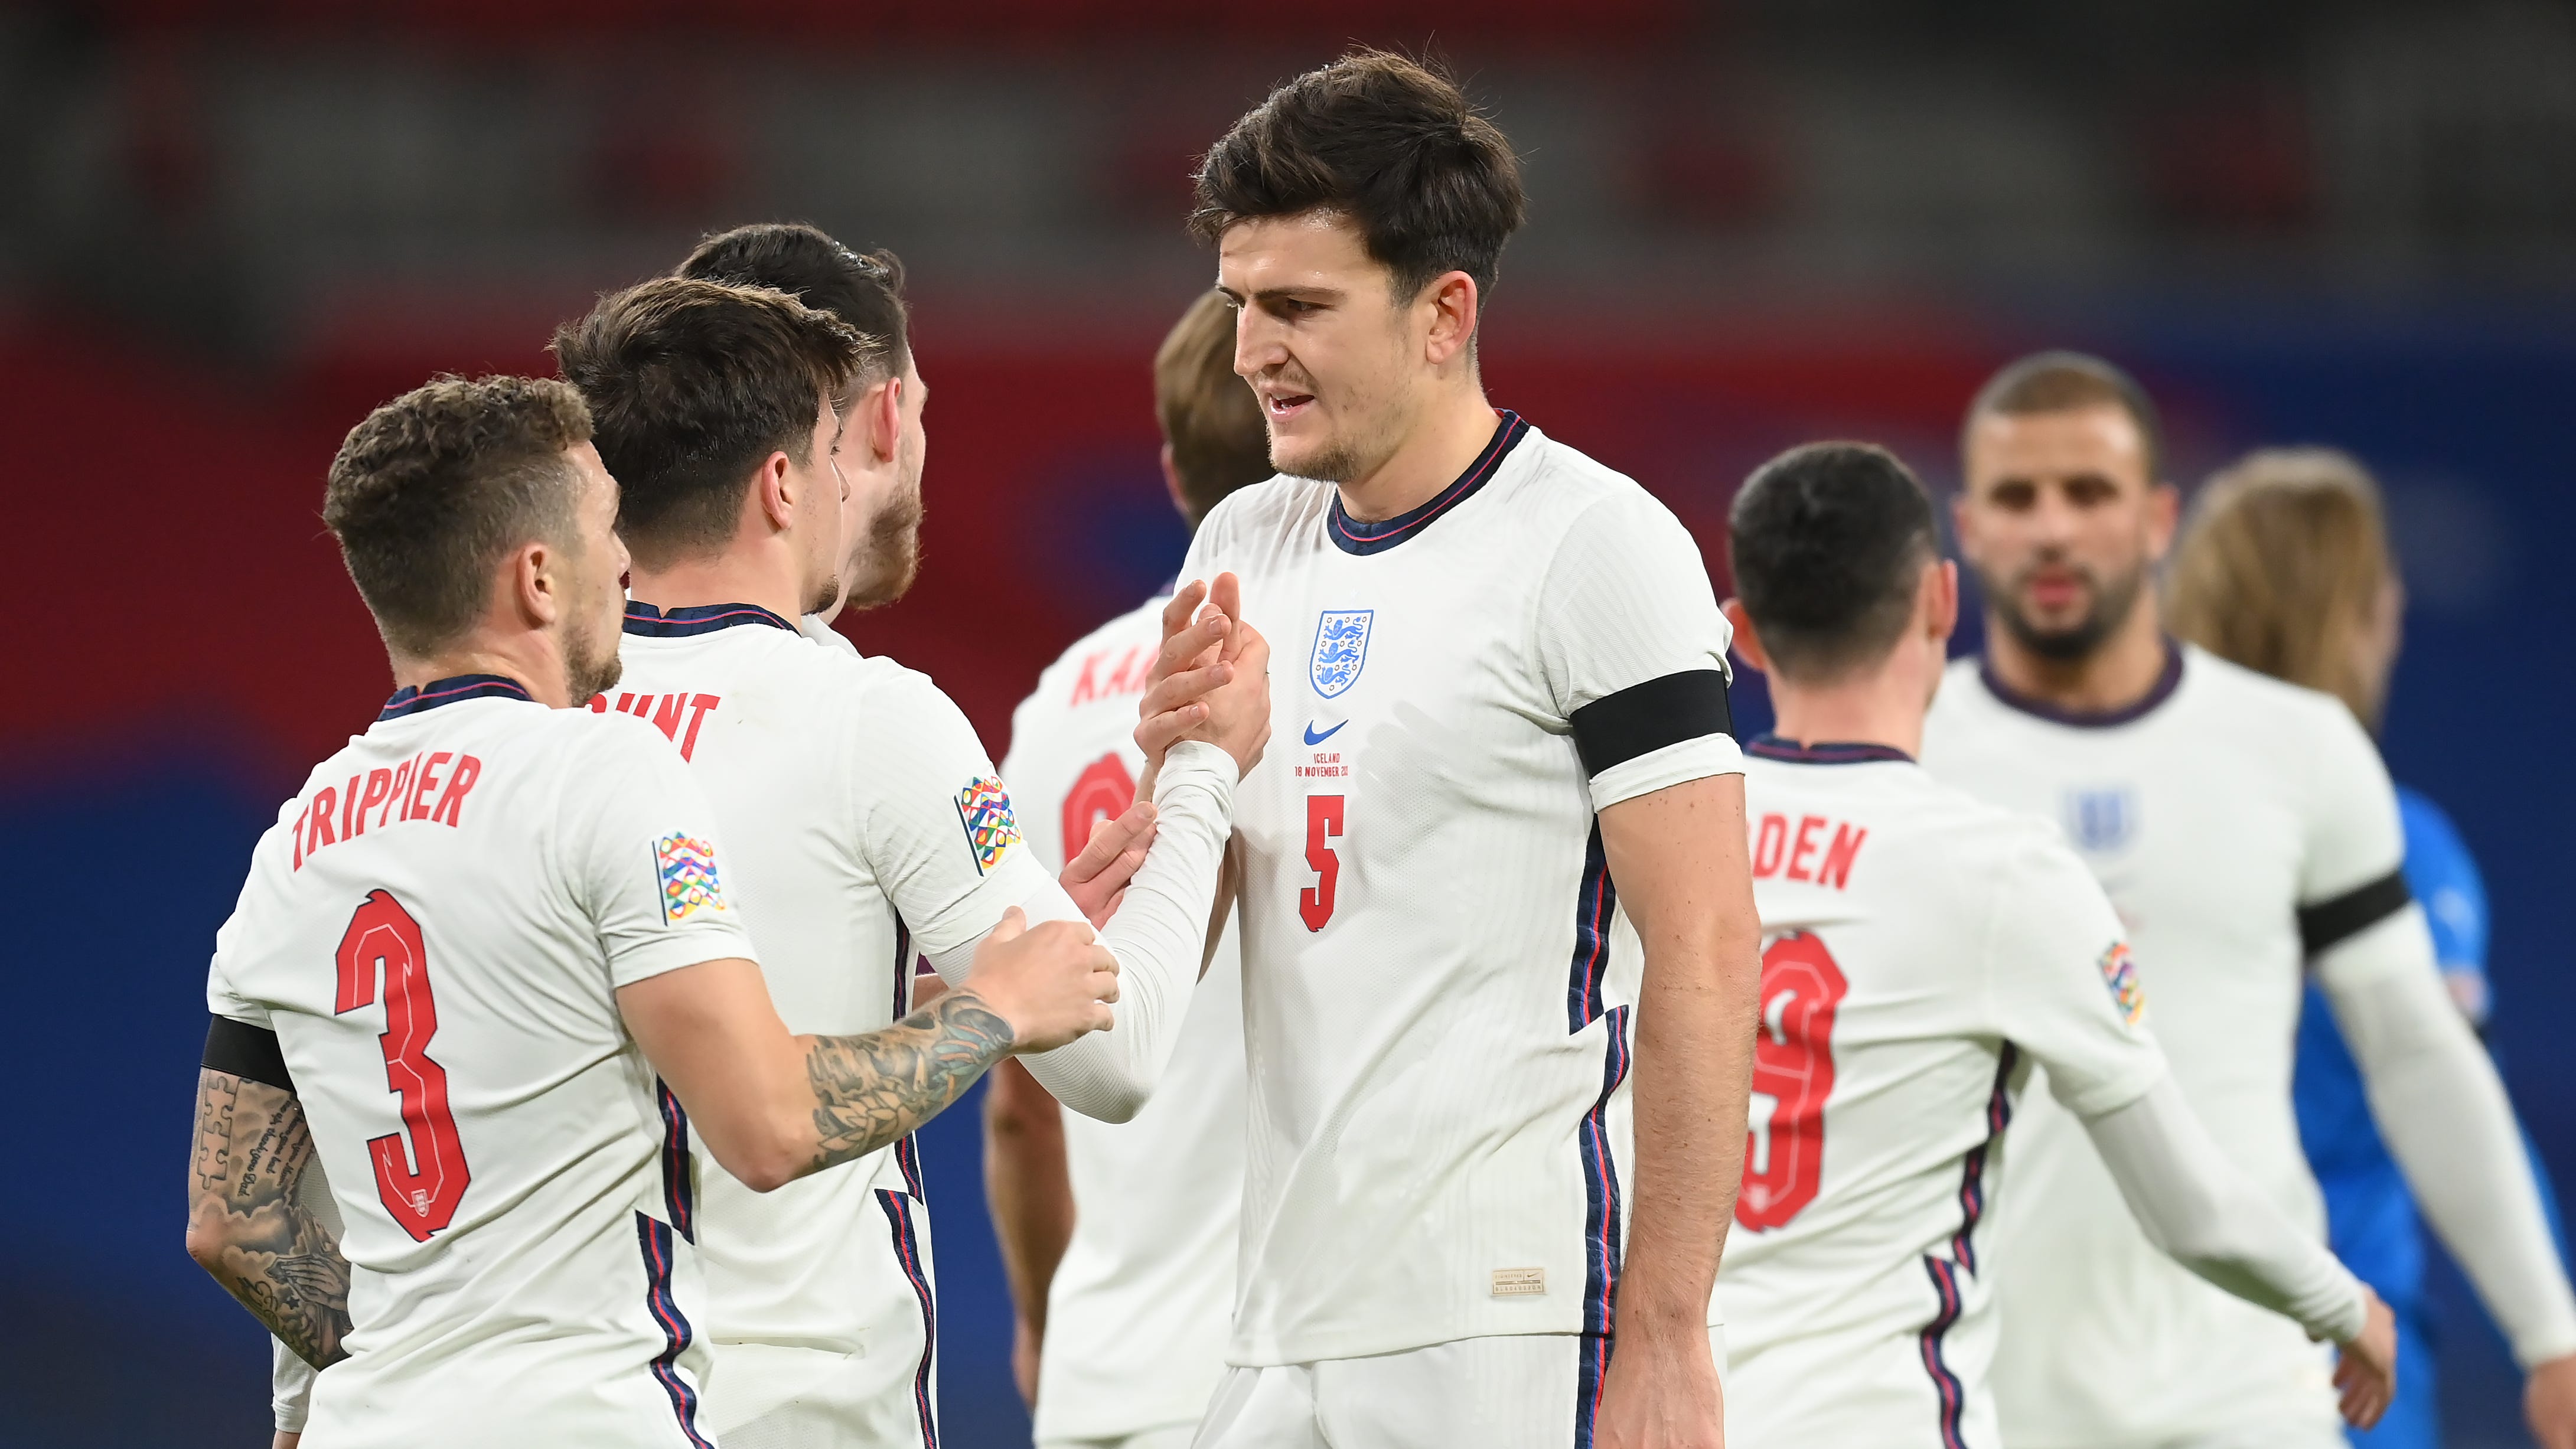 L’Inghilterra giocherà amichevoli agli Europei contro Austria e Romania in casa